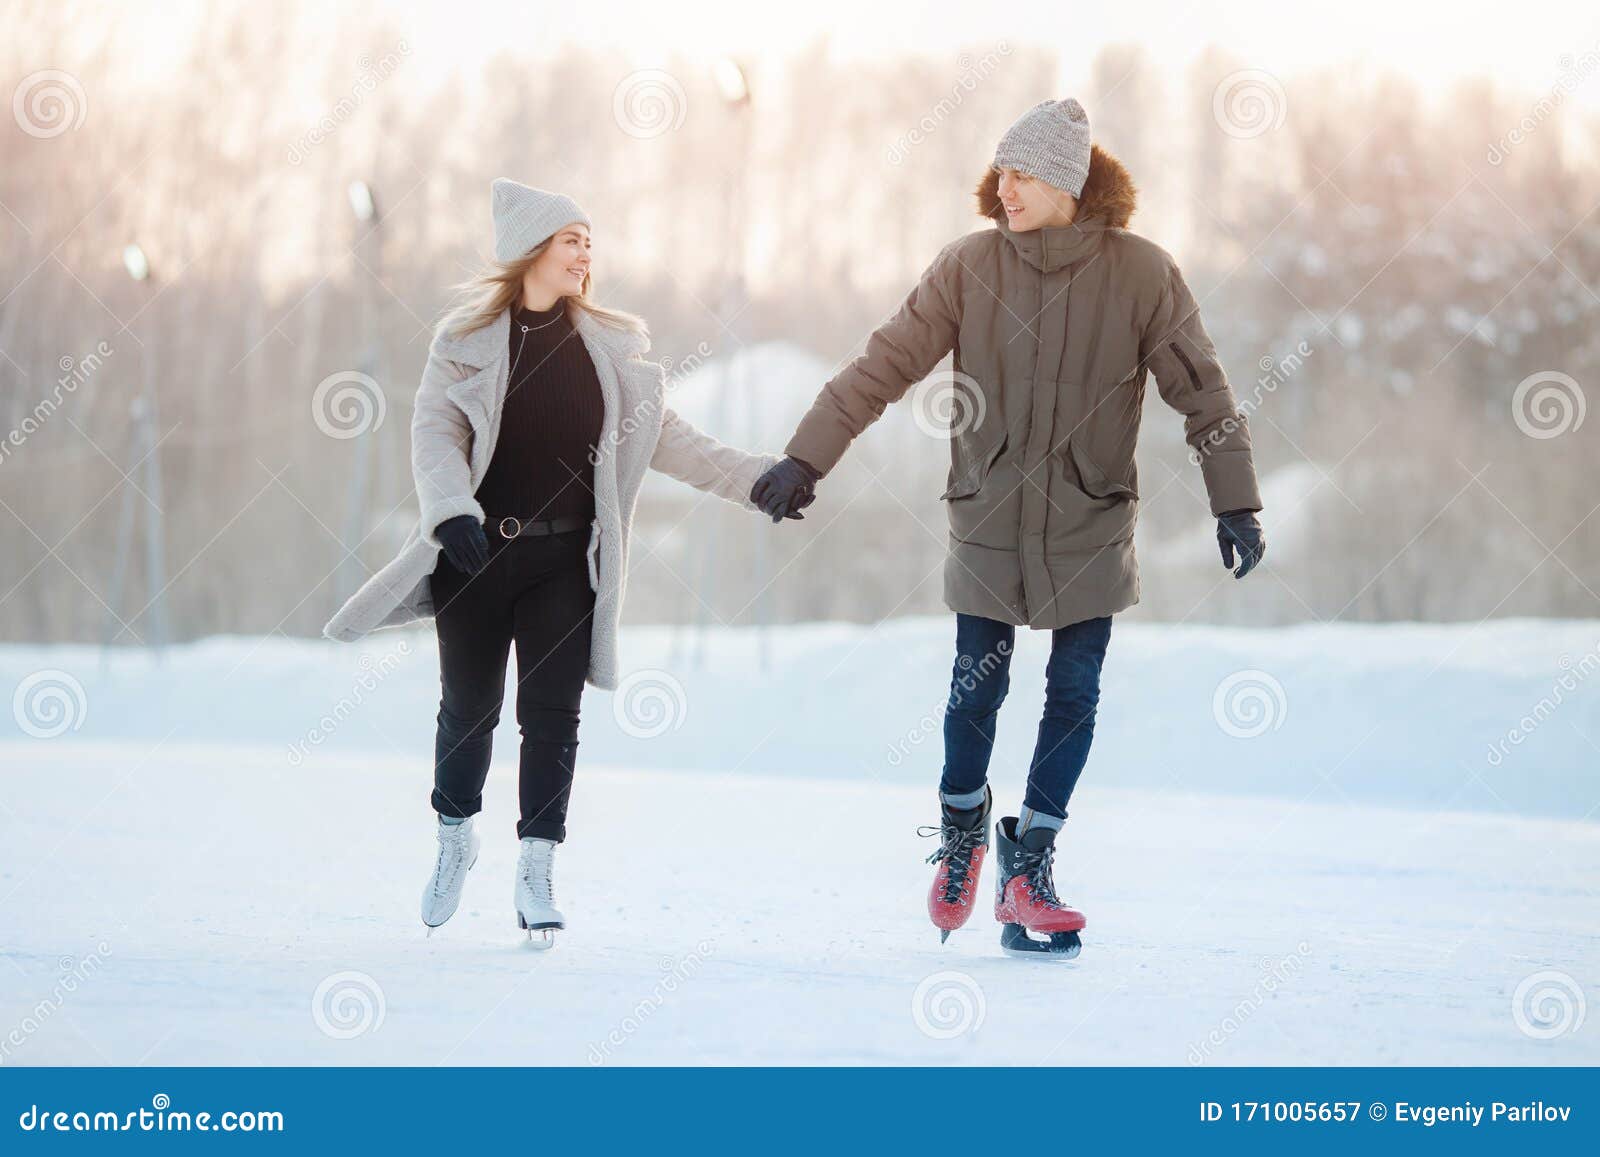 冬日雪地玩滑冰的情侣库存图片 图片包括有围巾 柏油的 女孩 业余爱好 滑冰 朋友 乐趣